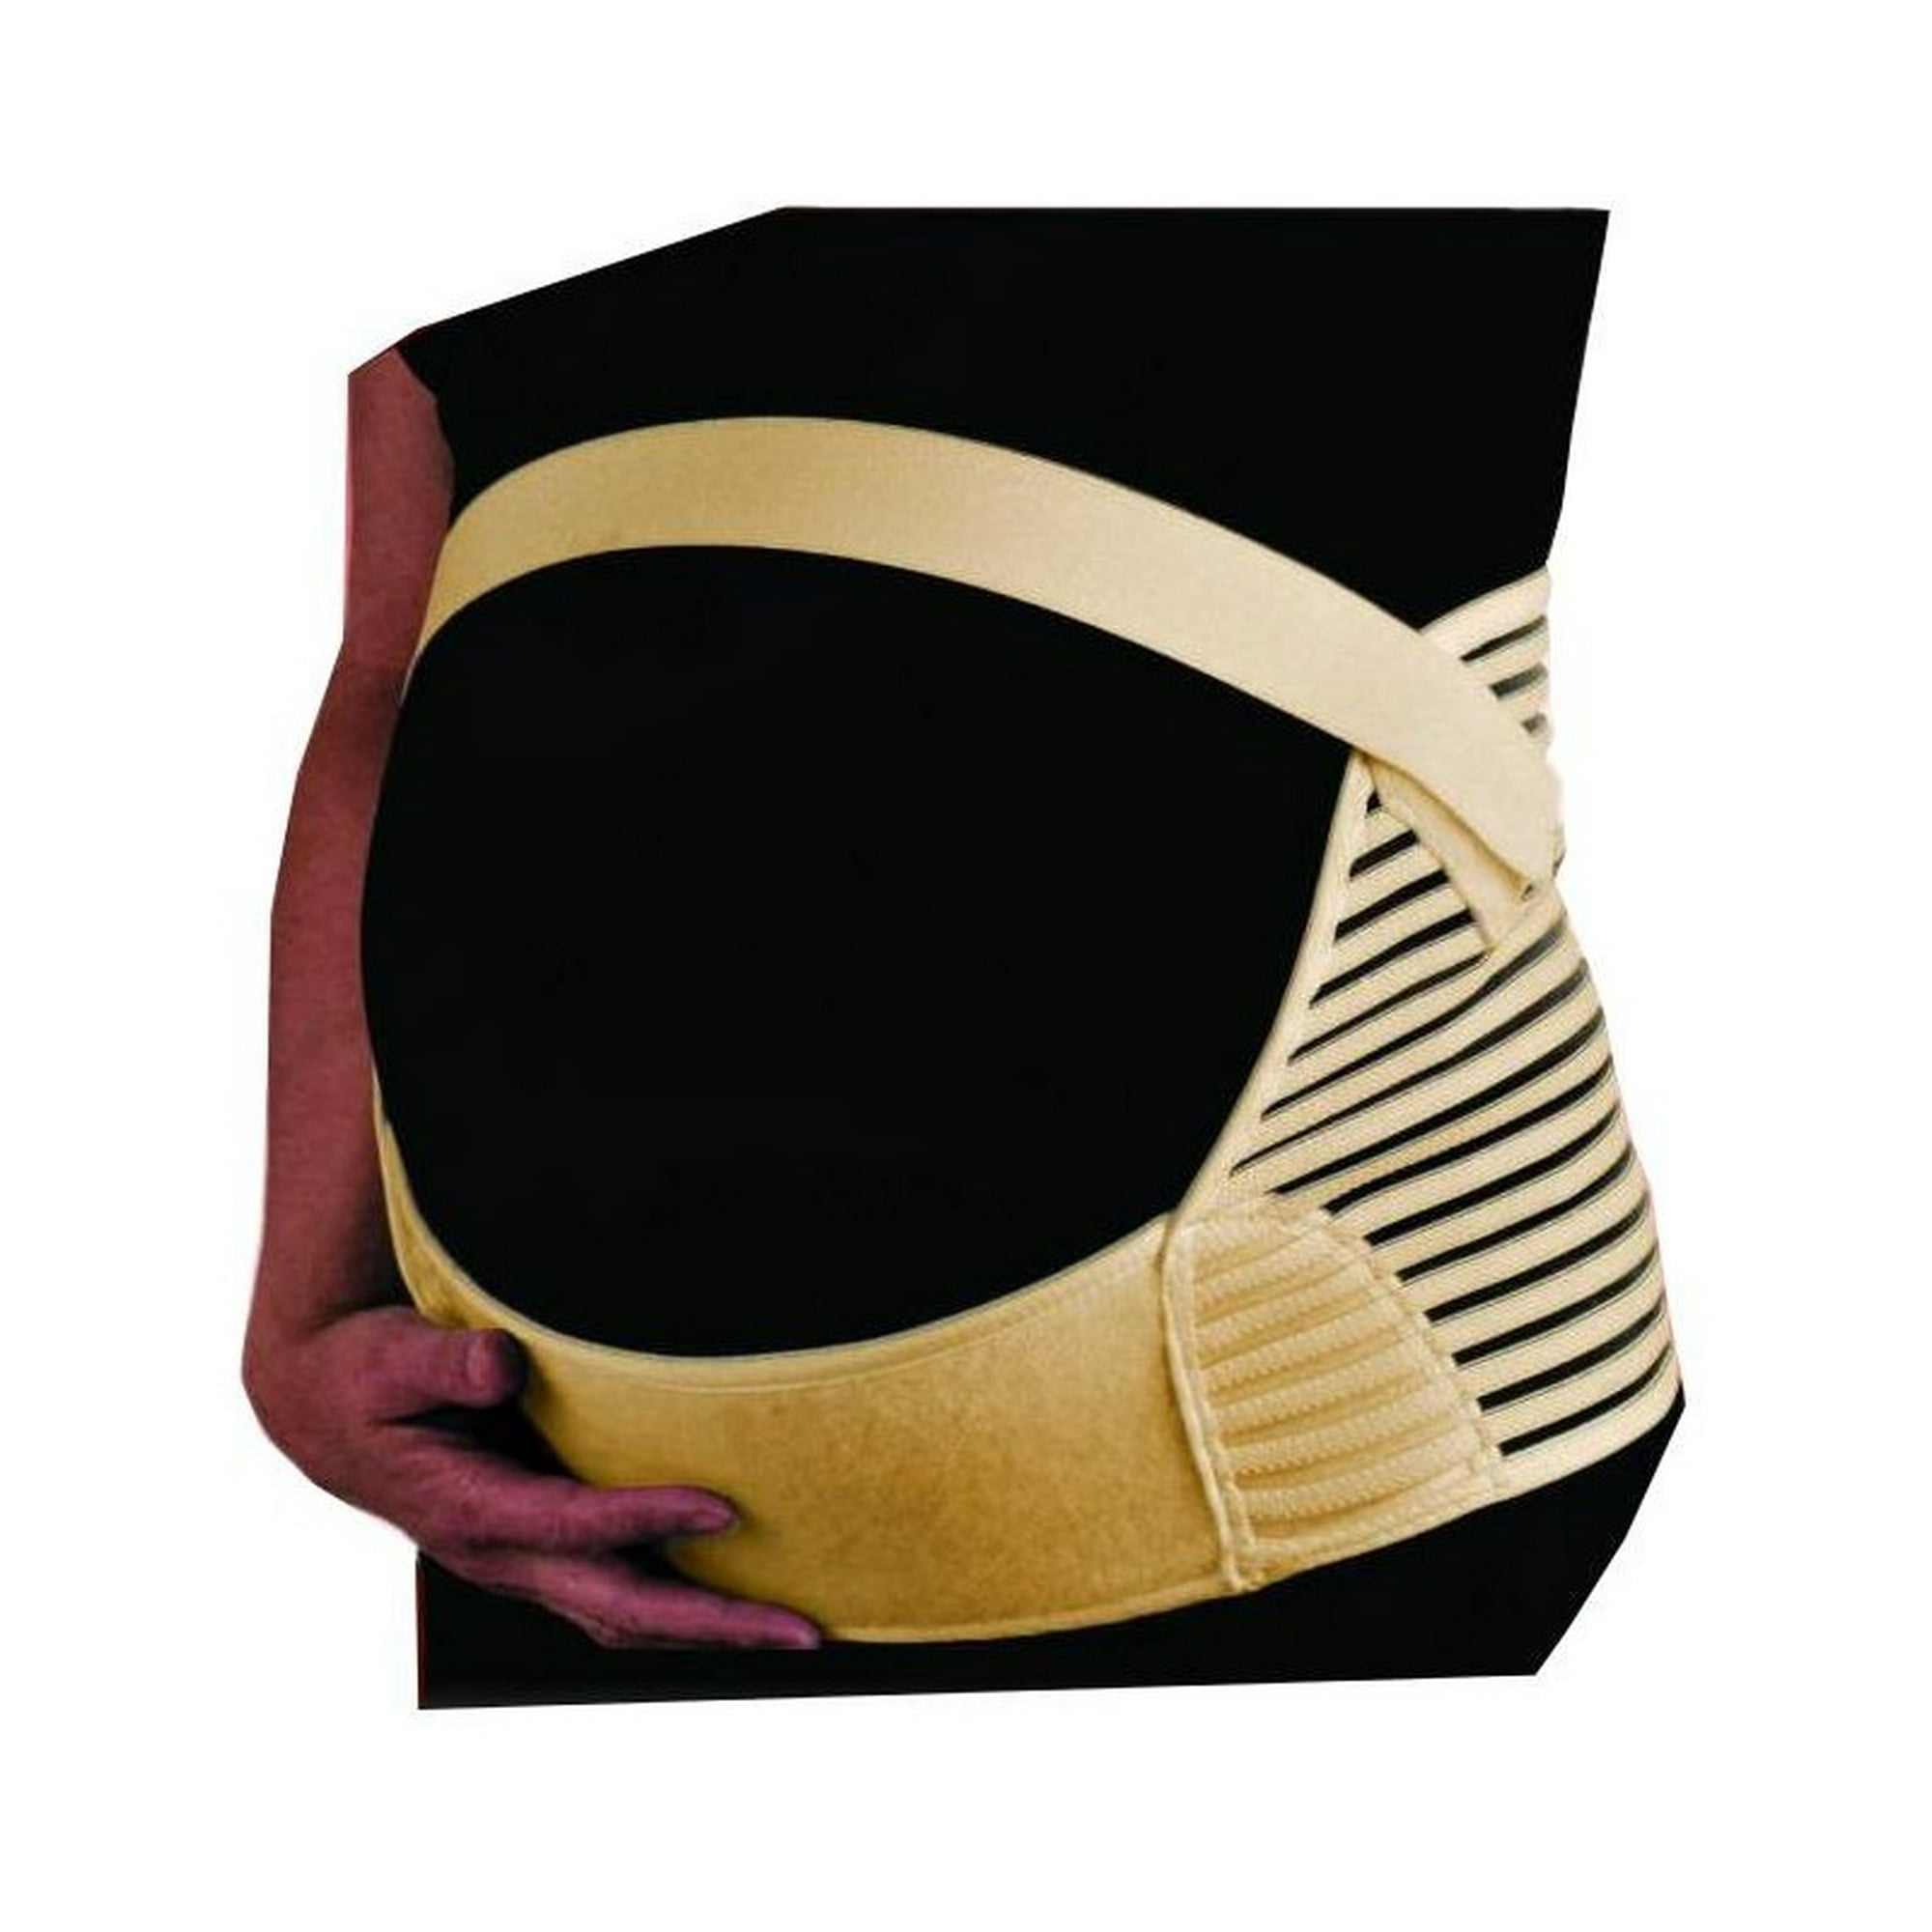 Cinturón de maternidad, banda para la cintura/espalda/abdomen, faja para el  vientre, negro, talla S-XXL Zhivalor Fajas de Maternidad